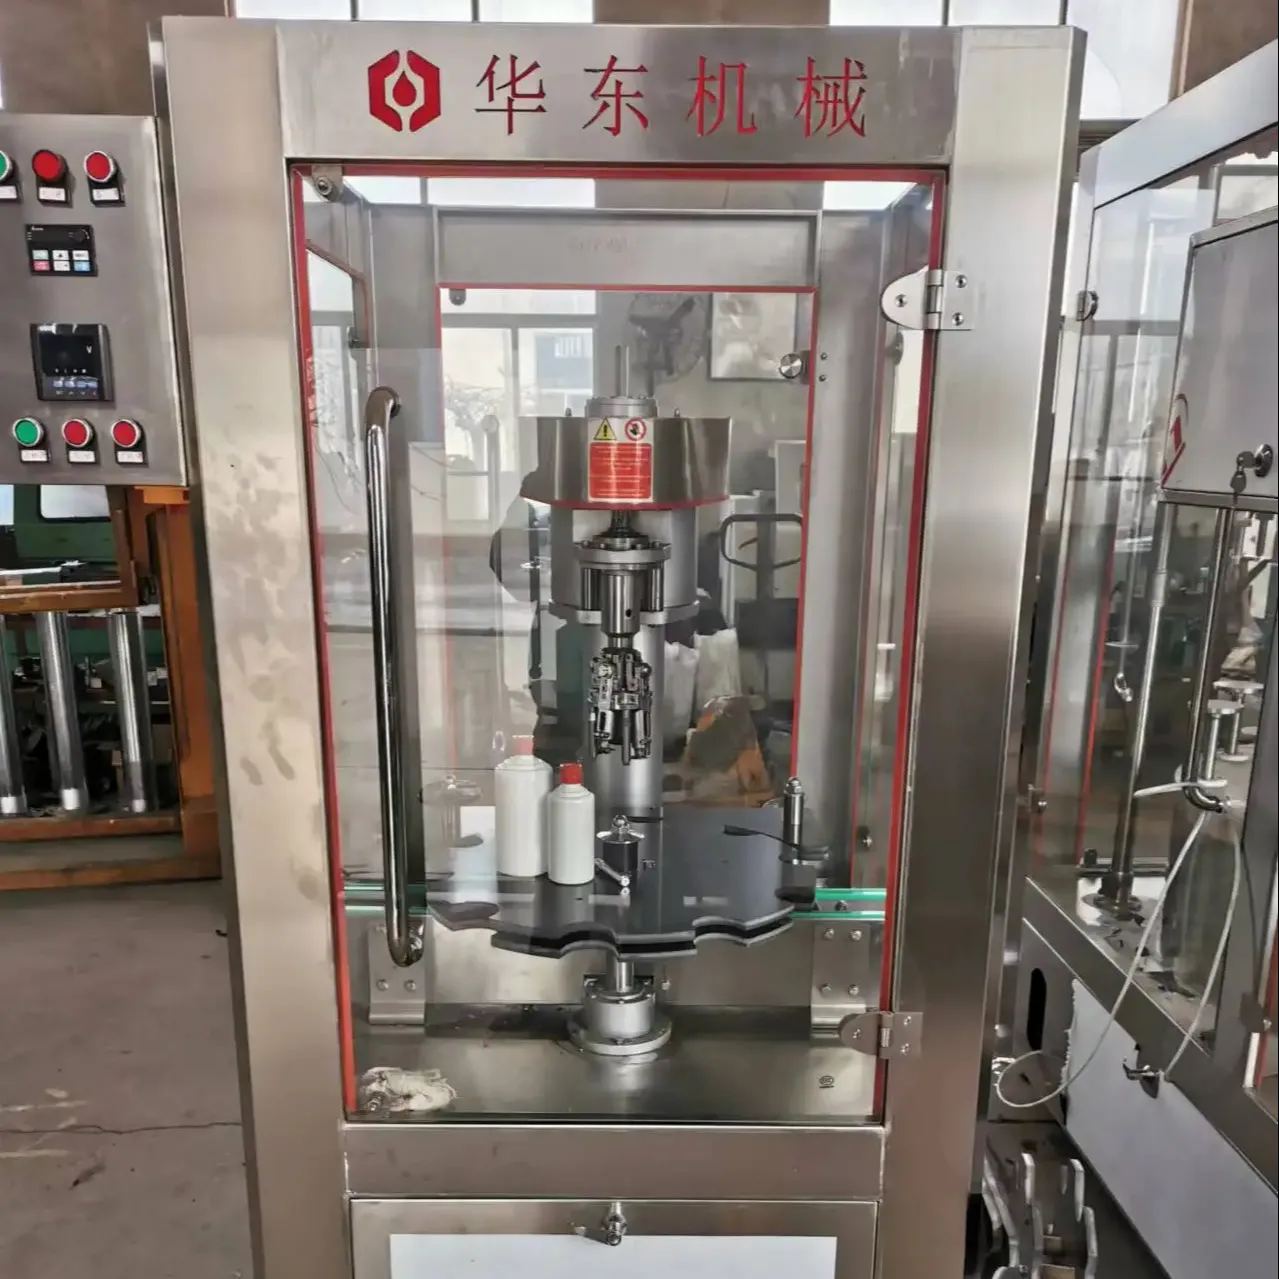 स्टेनलेस स्टील रोलिंग कैप वाइन बेवरेज कैपिंग मशीन संचालित करने में आसान इंजन बियरिंग कोर कंपोनेंट्स विनिर्माण संयंत्र उपयोग